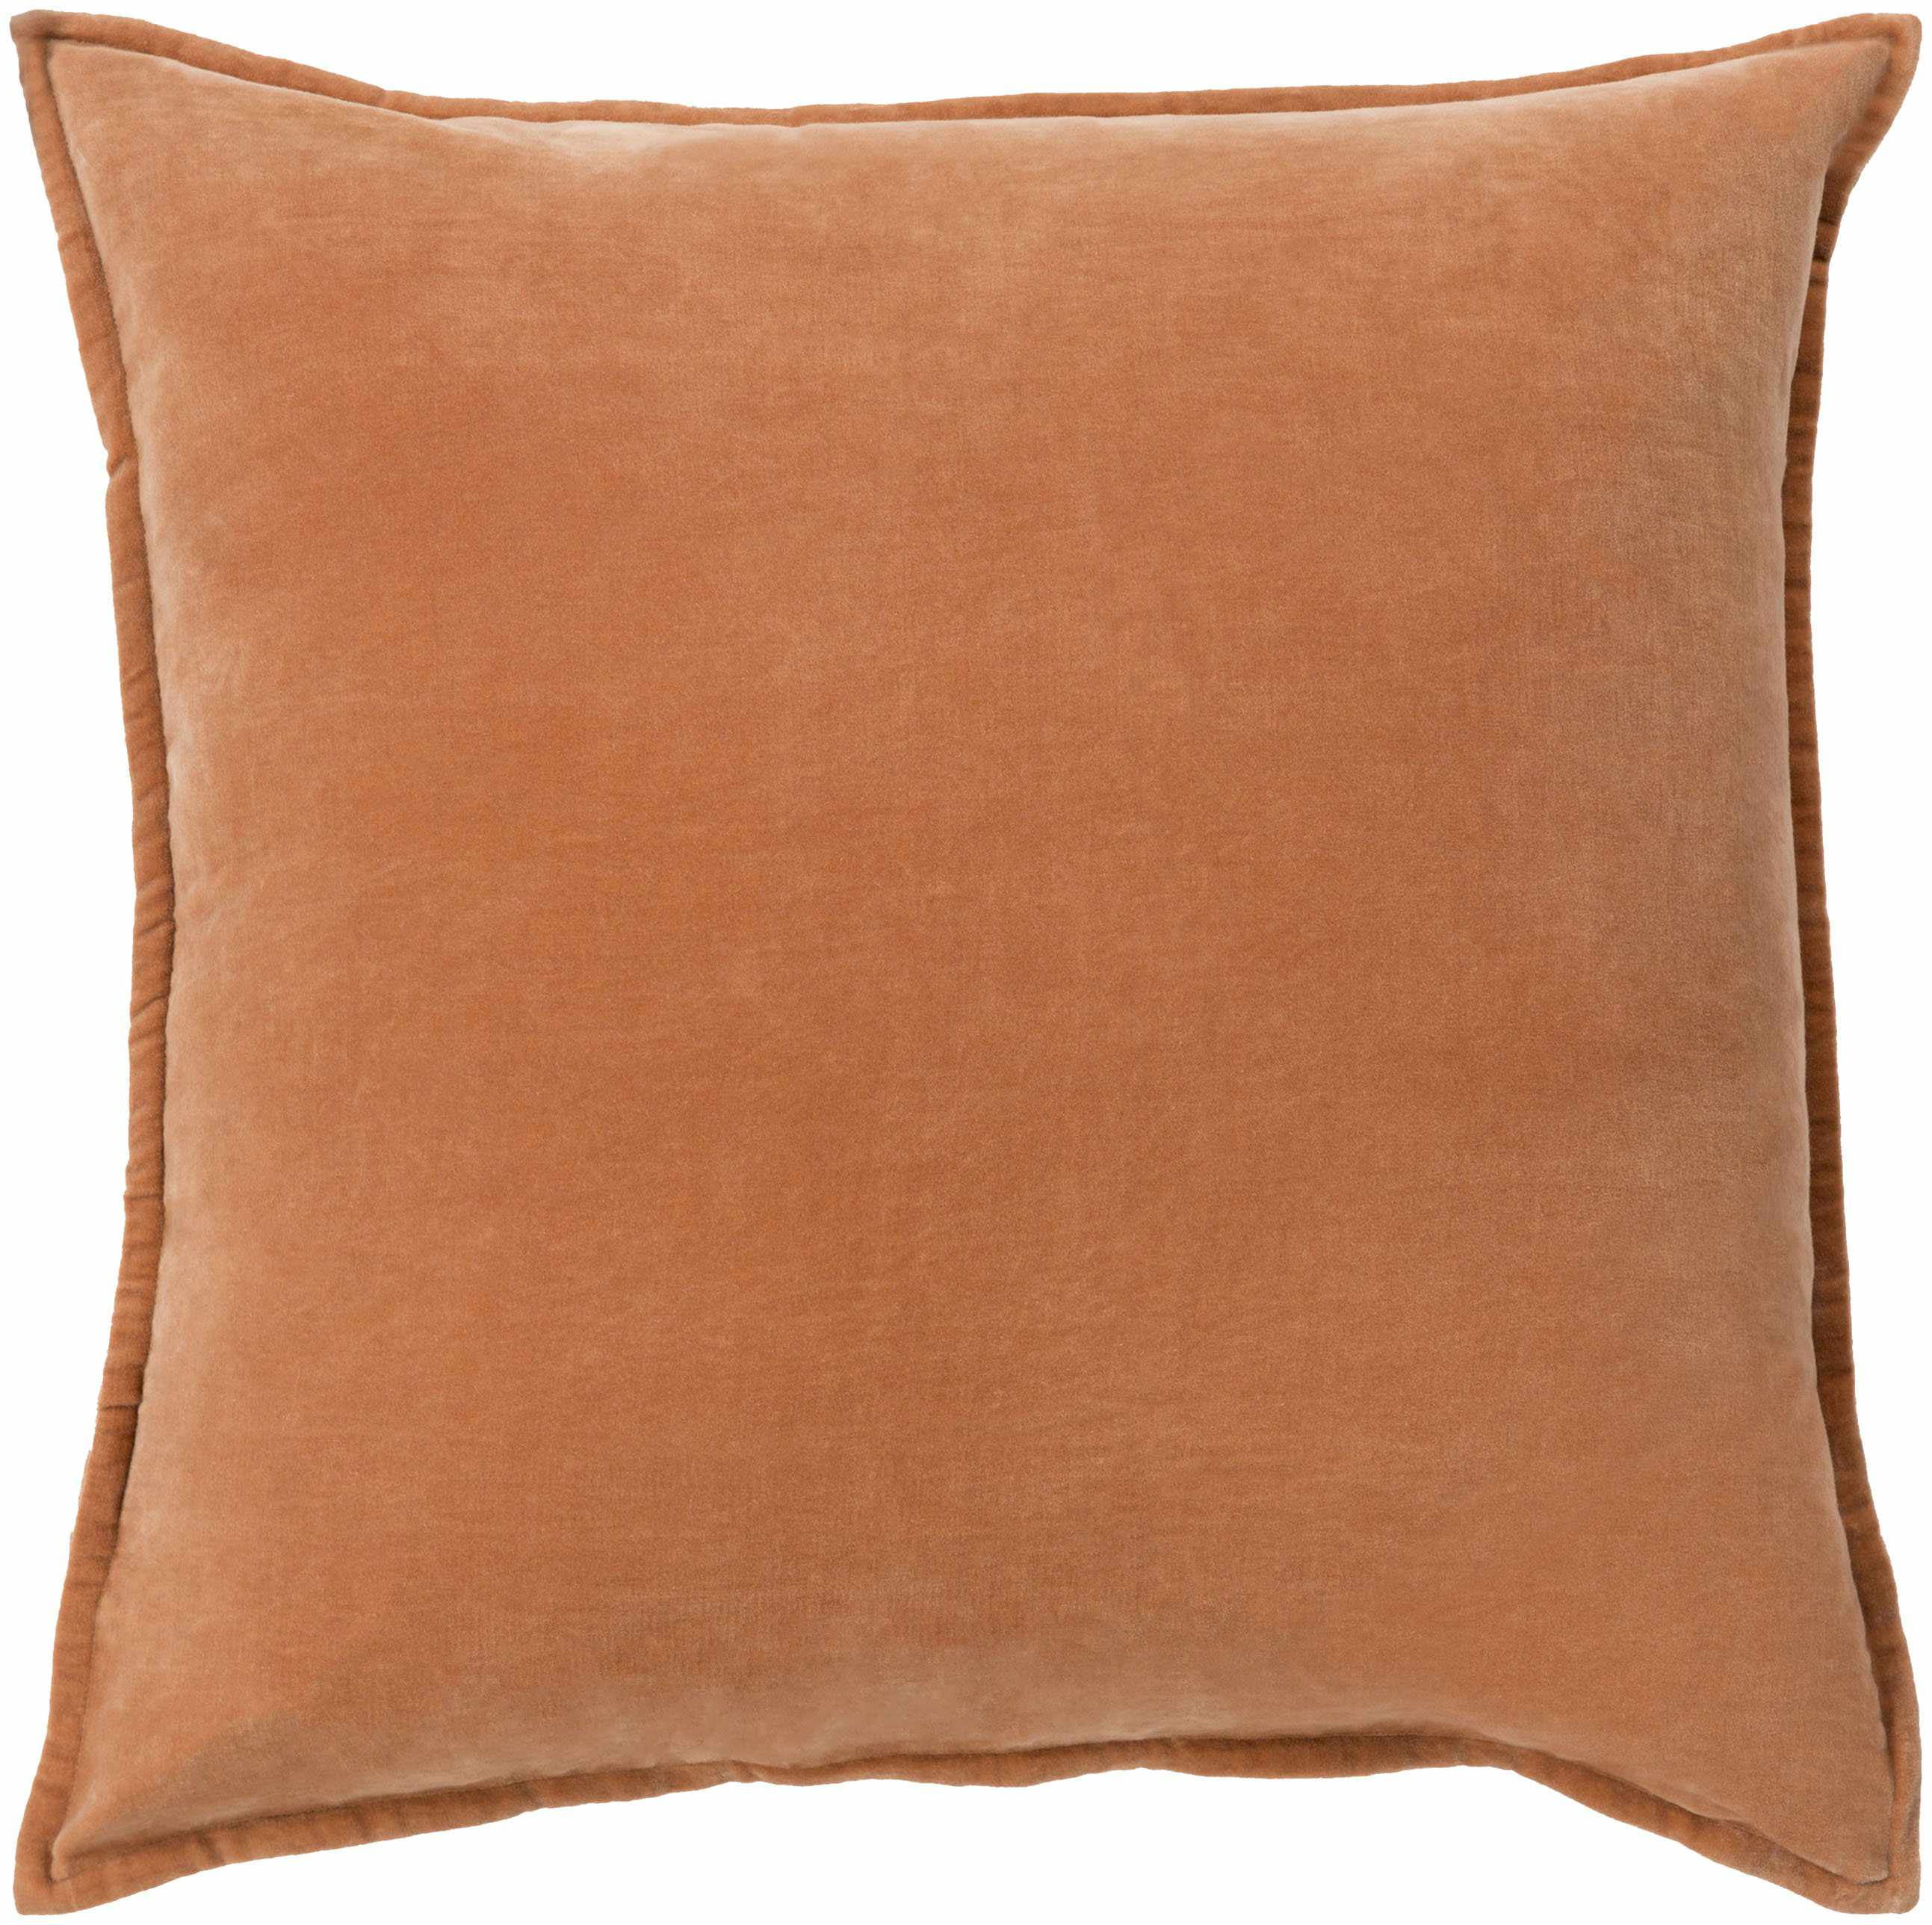 Decorative Velvet Cushion Cover Orange Soft Pillow Case Indian Art 18" PL18540